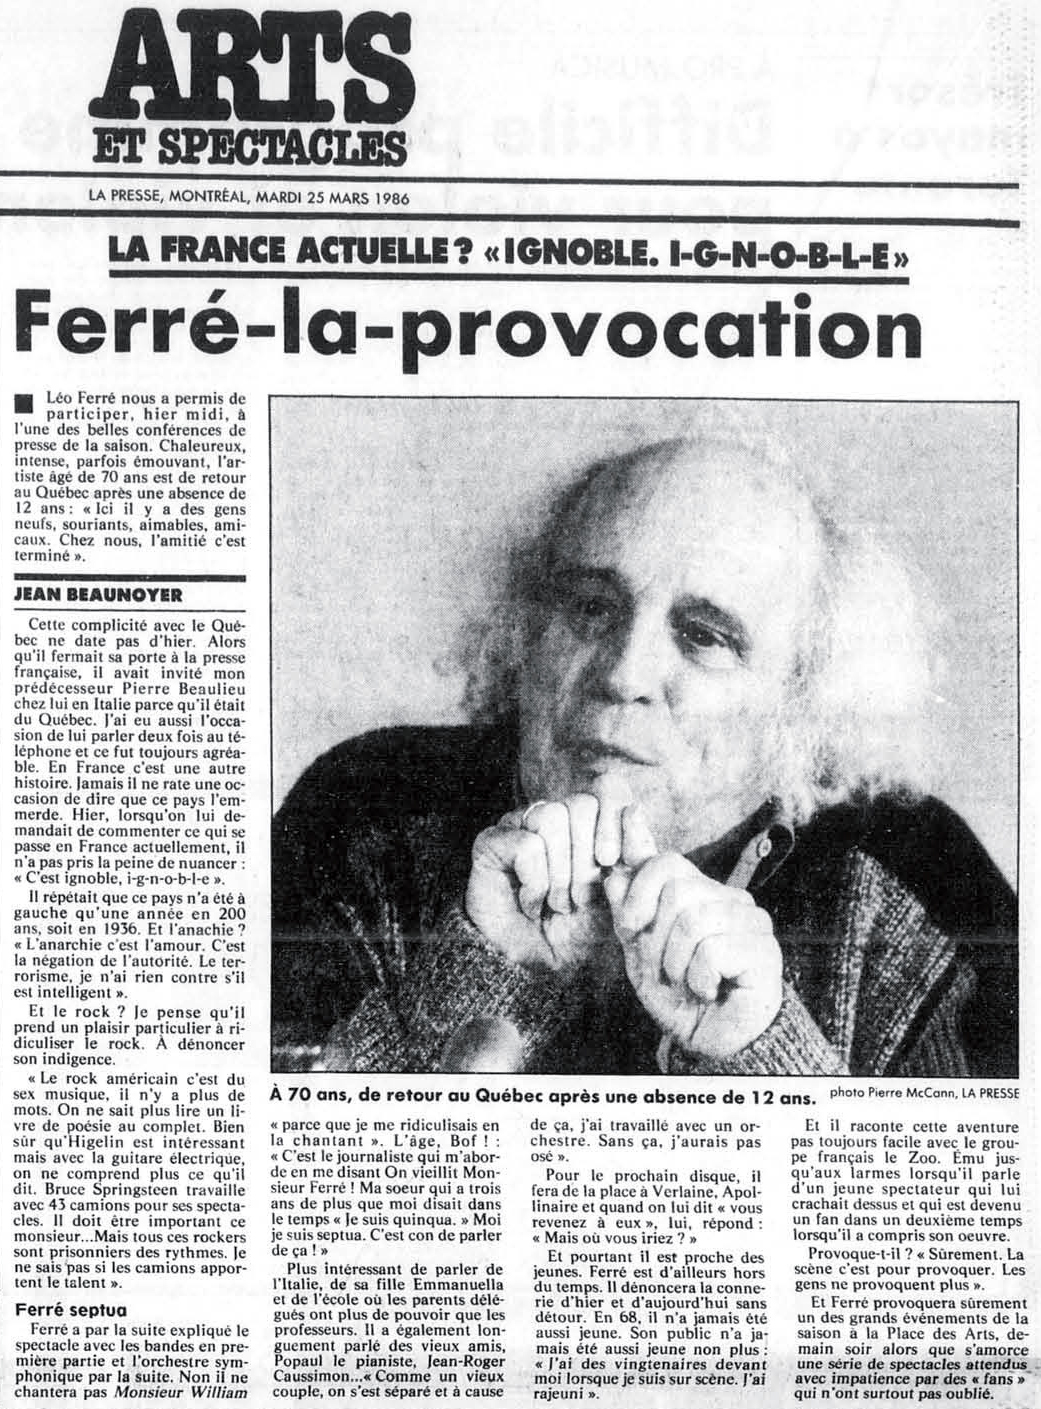 Léo Ferré - La Presse, 25 mars 1986, C. Arts et spectacles